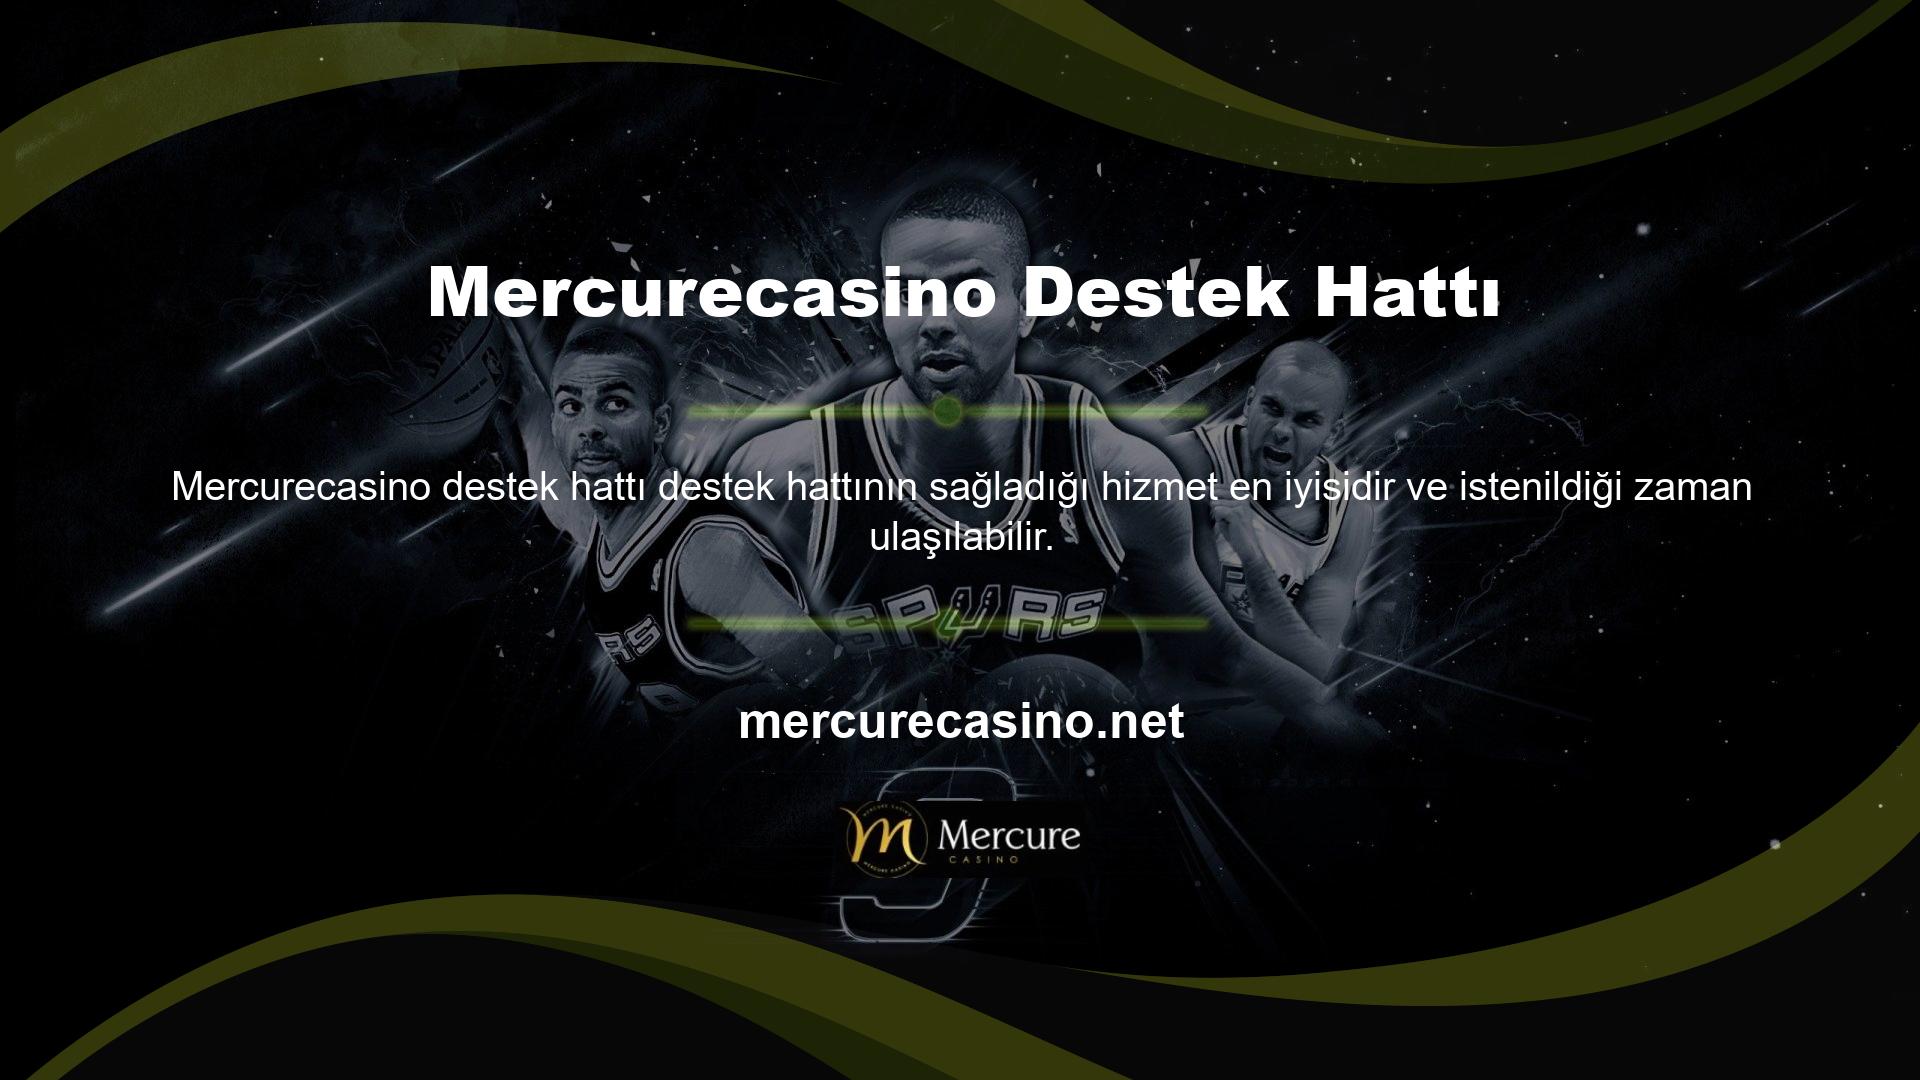 Mercurecasino casino siteleri birleştirildi ve herhangi bir şikâyet alınmadı